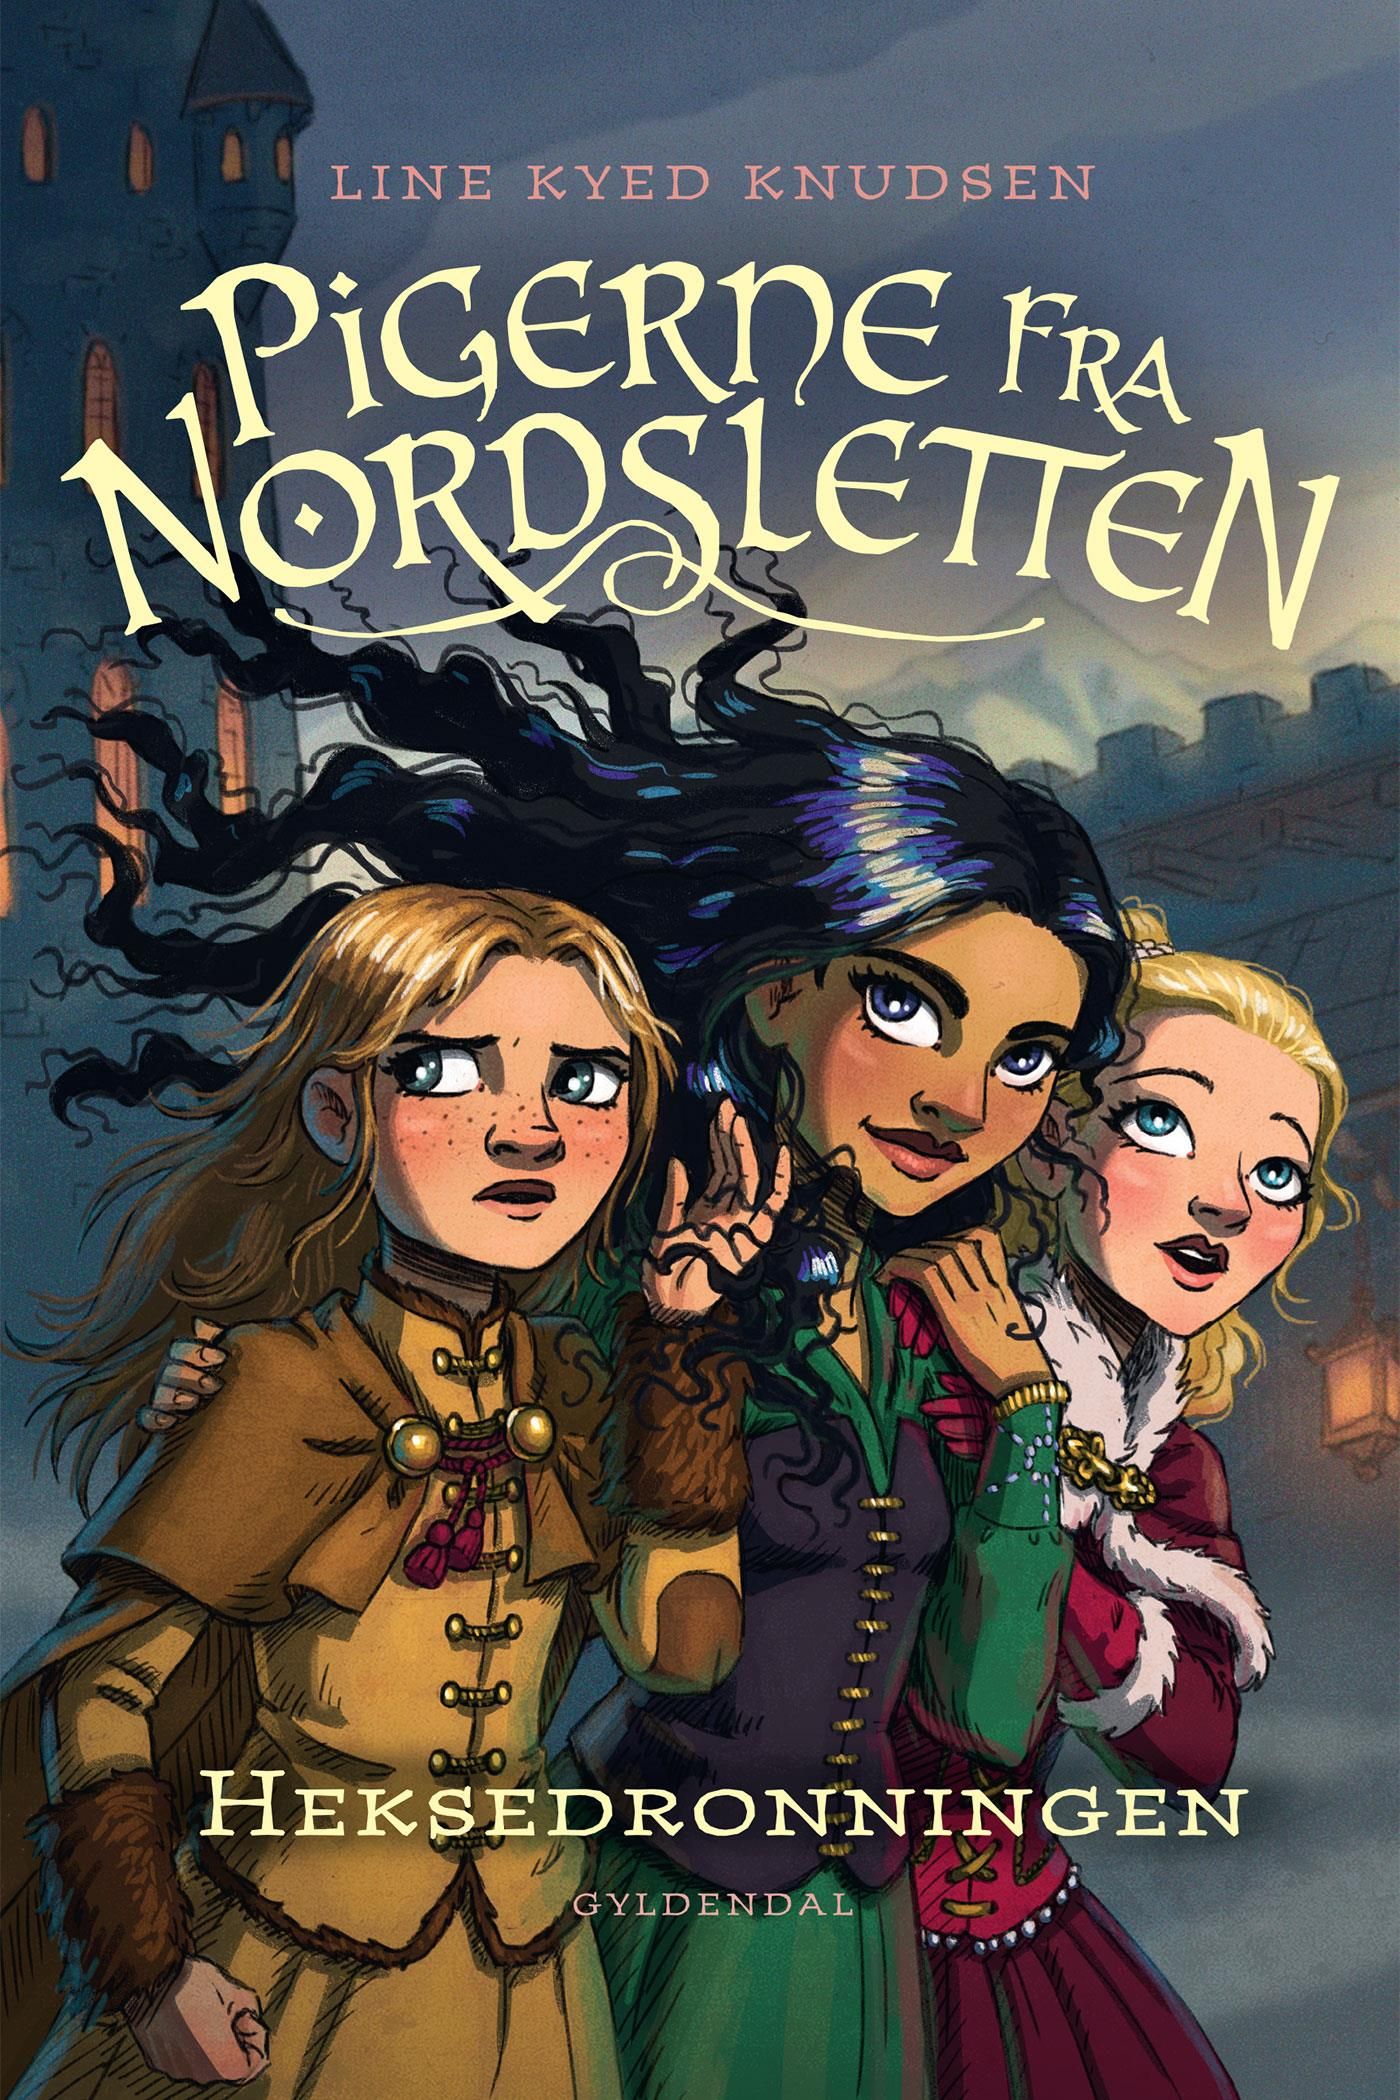 Pigerne fra Nordsletten 2 - Heksedronningen, e-bok av Line Kyed Knudsen